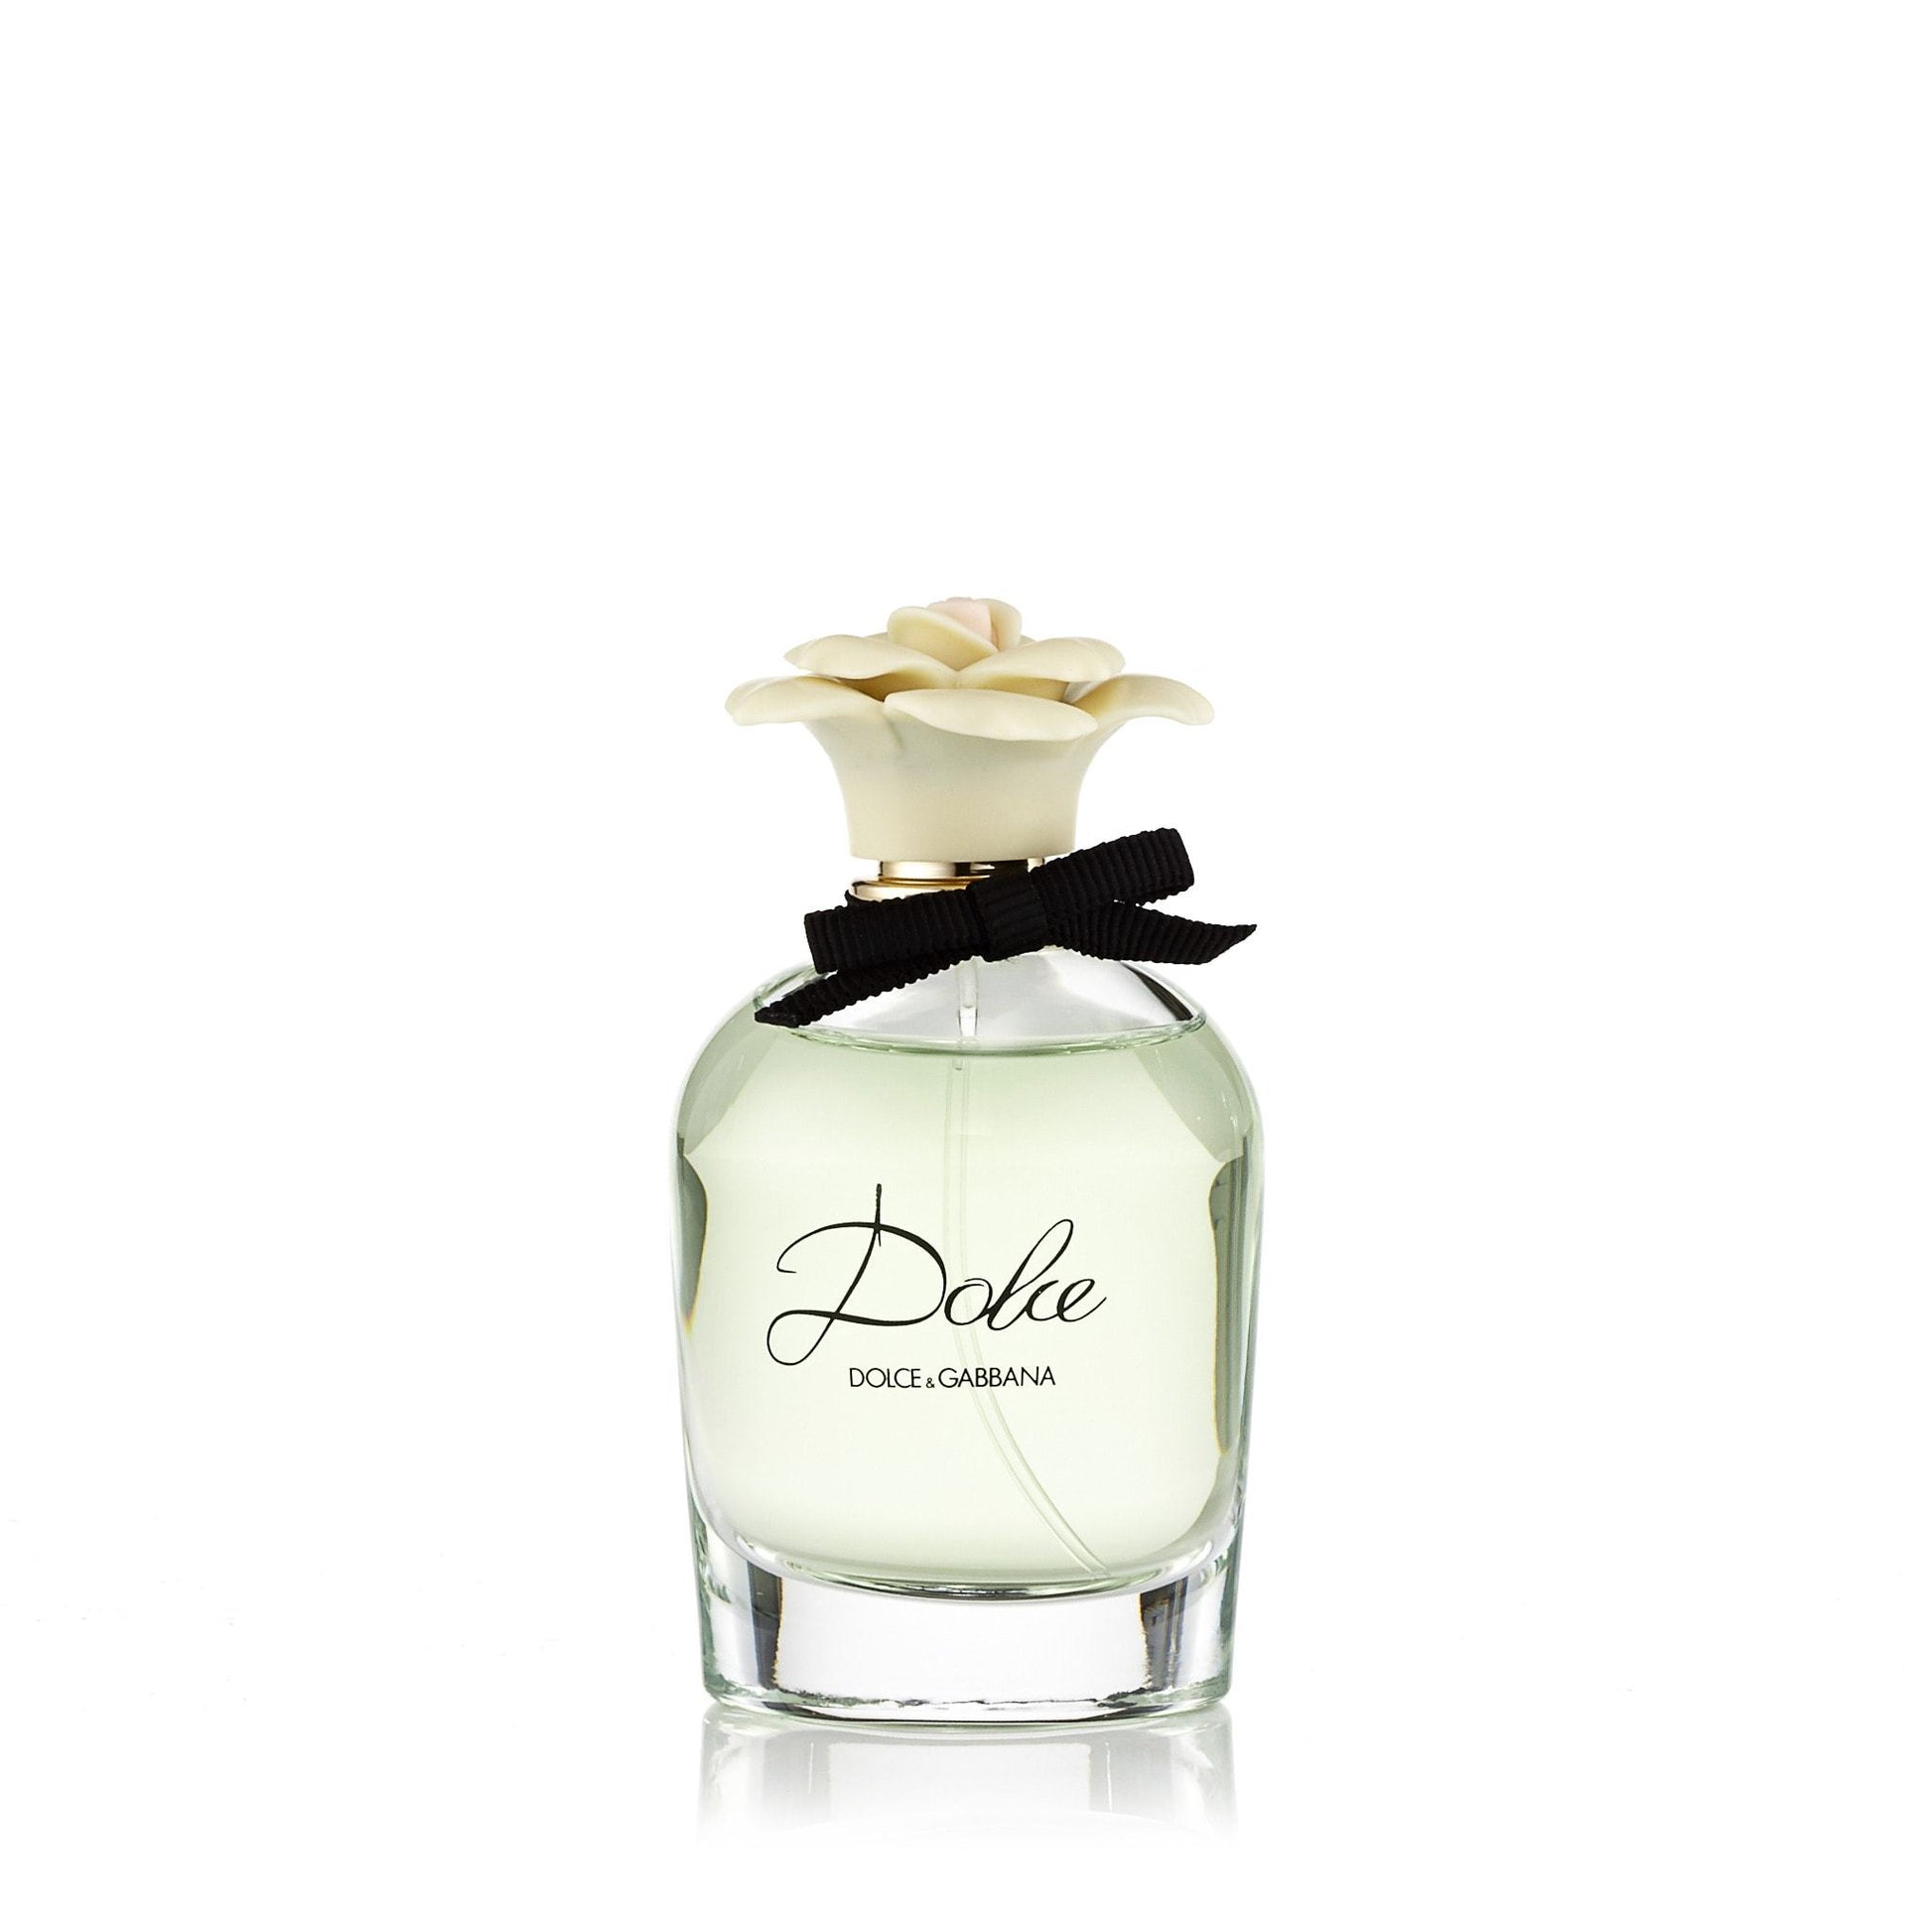 Dolce Eau de Parfum Spray for Women by D&G, Product image 1